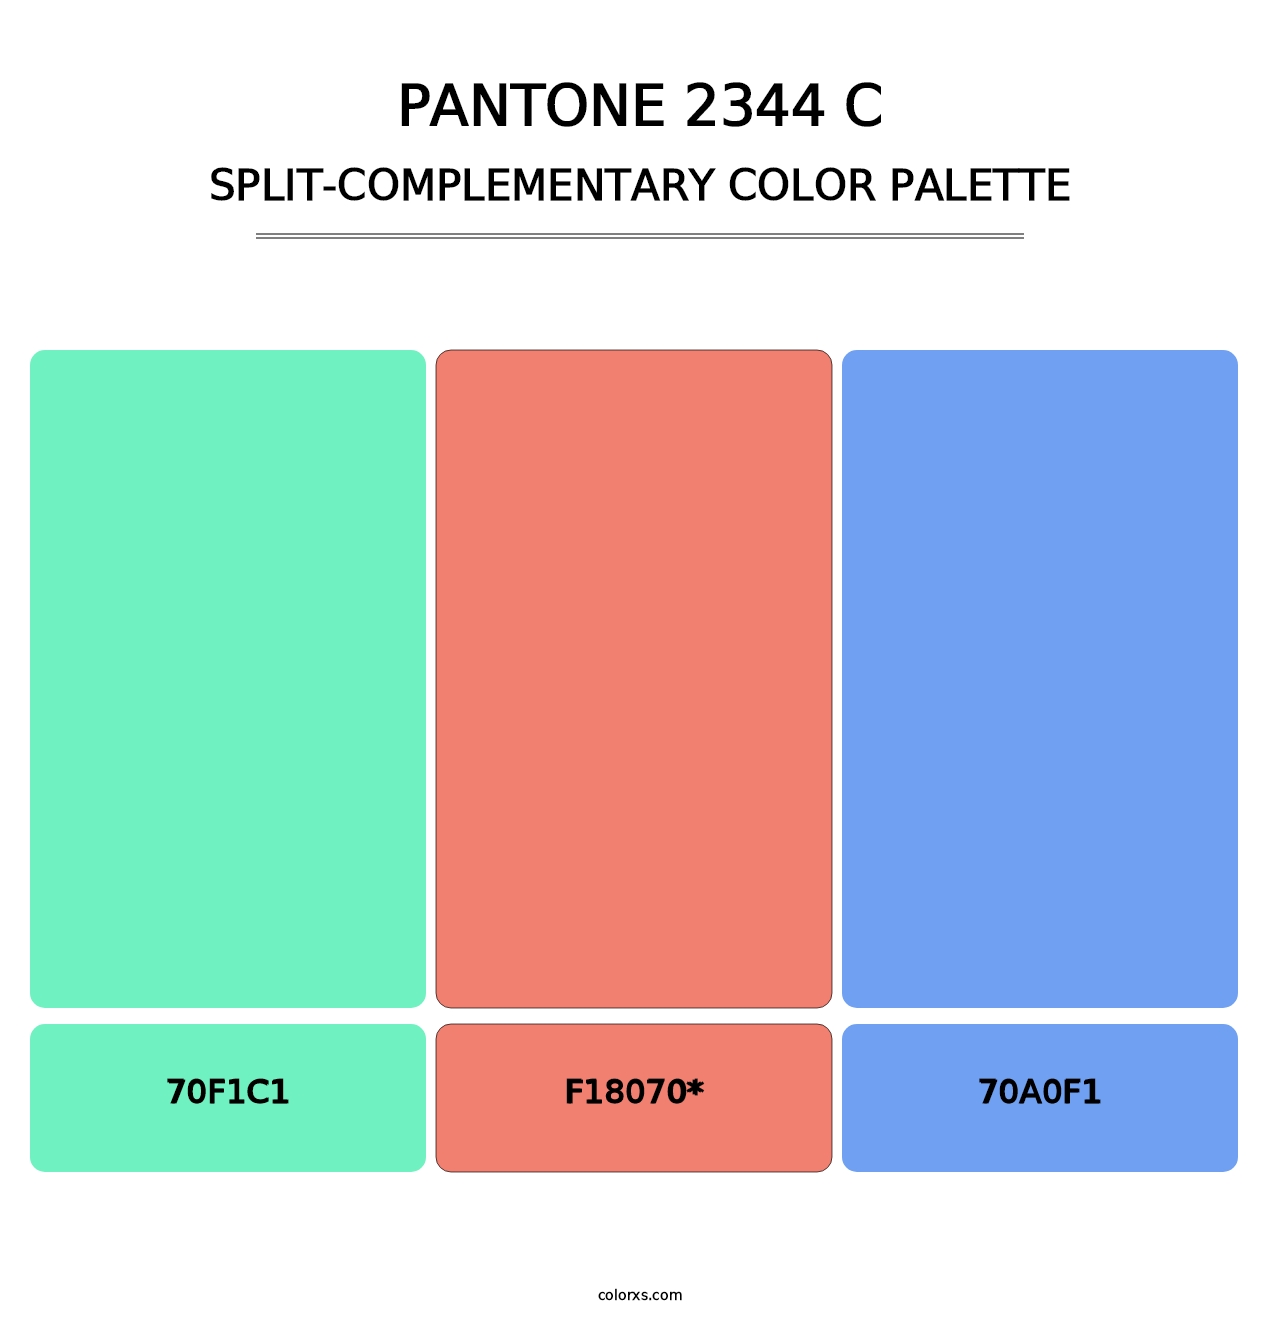 PANTONE 2344 C - Split-Complementary Color Palette